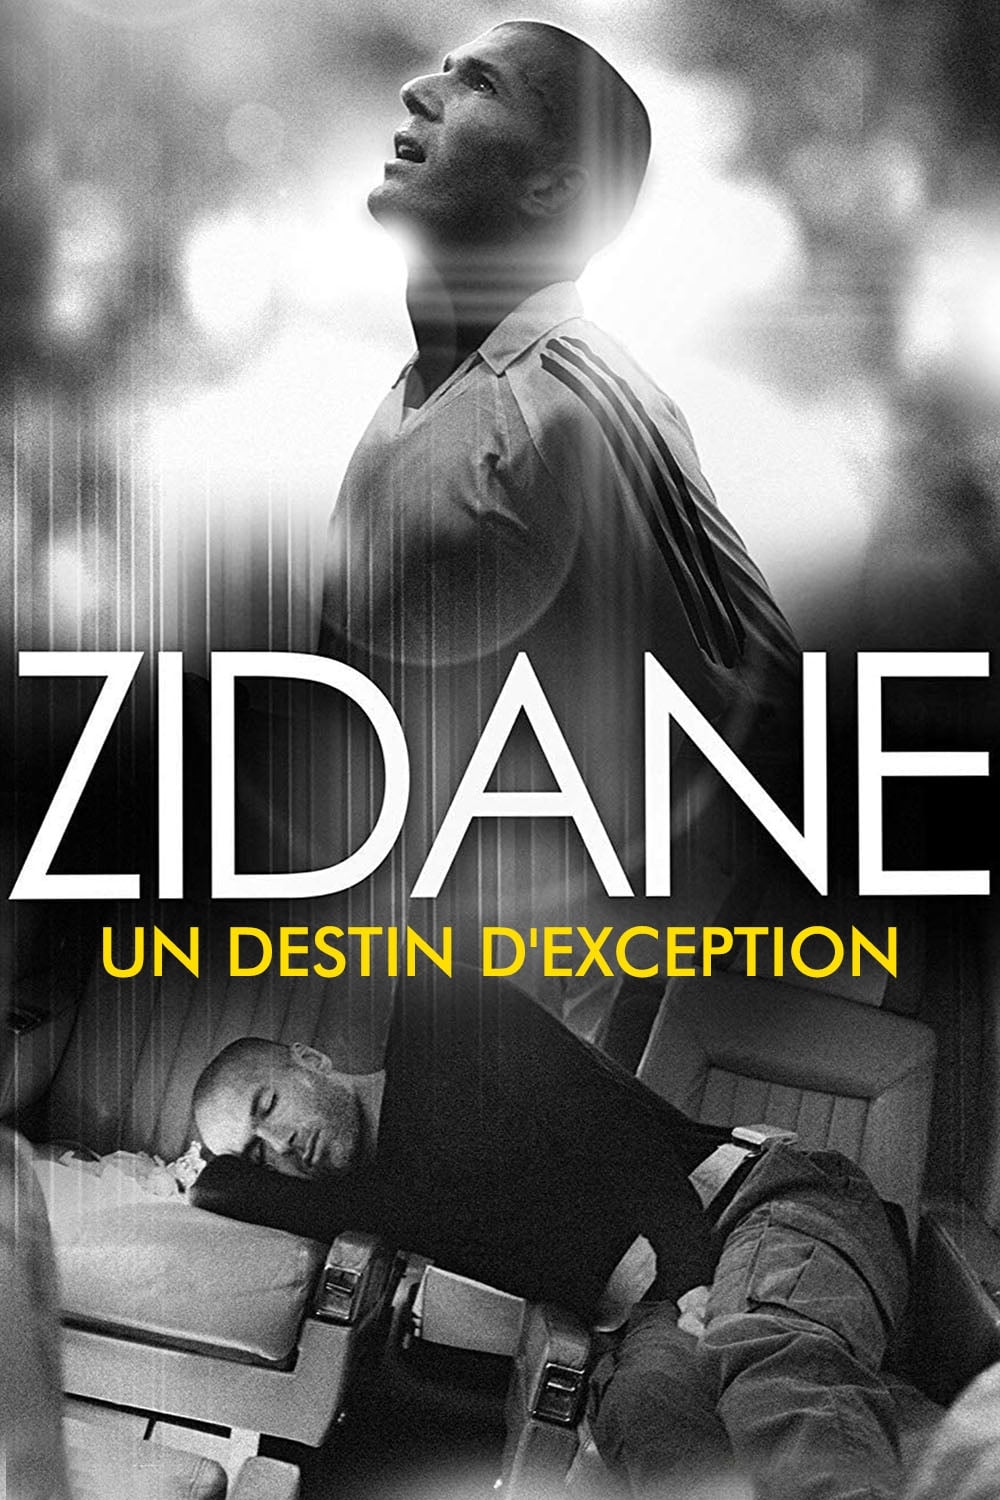 Zidane, un destin d'exception film